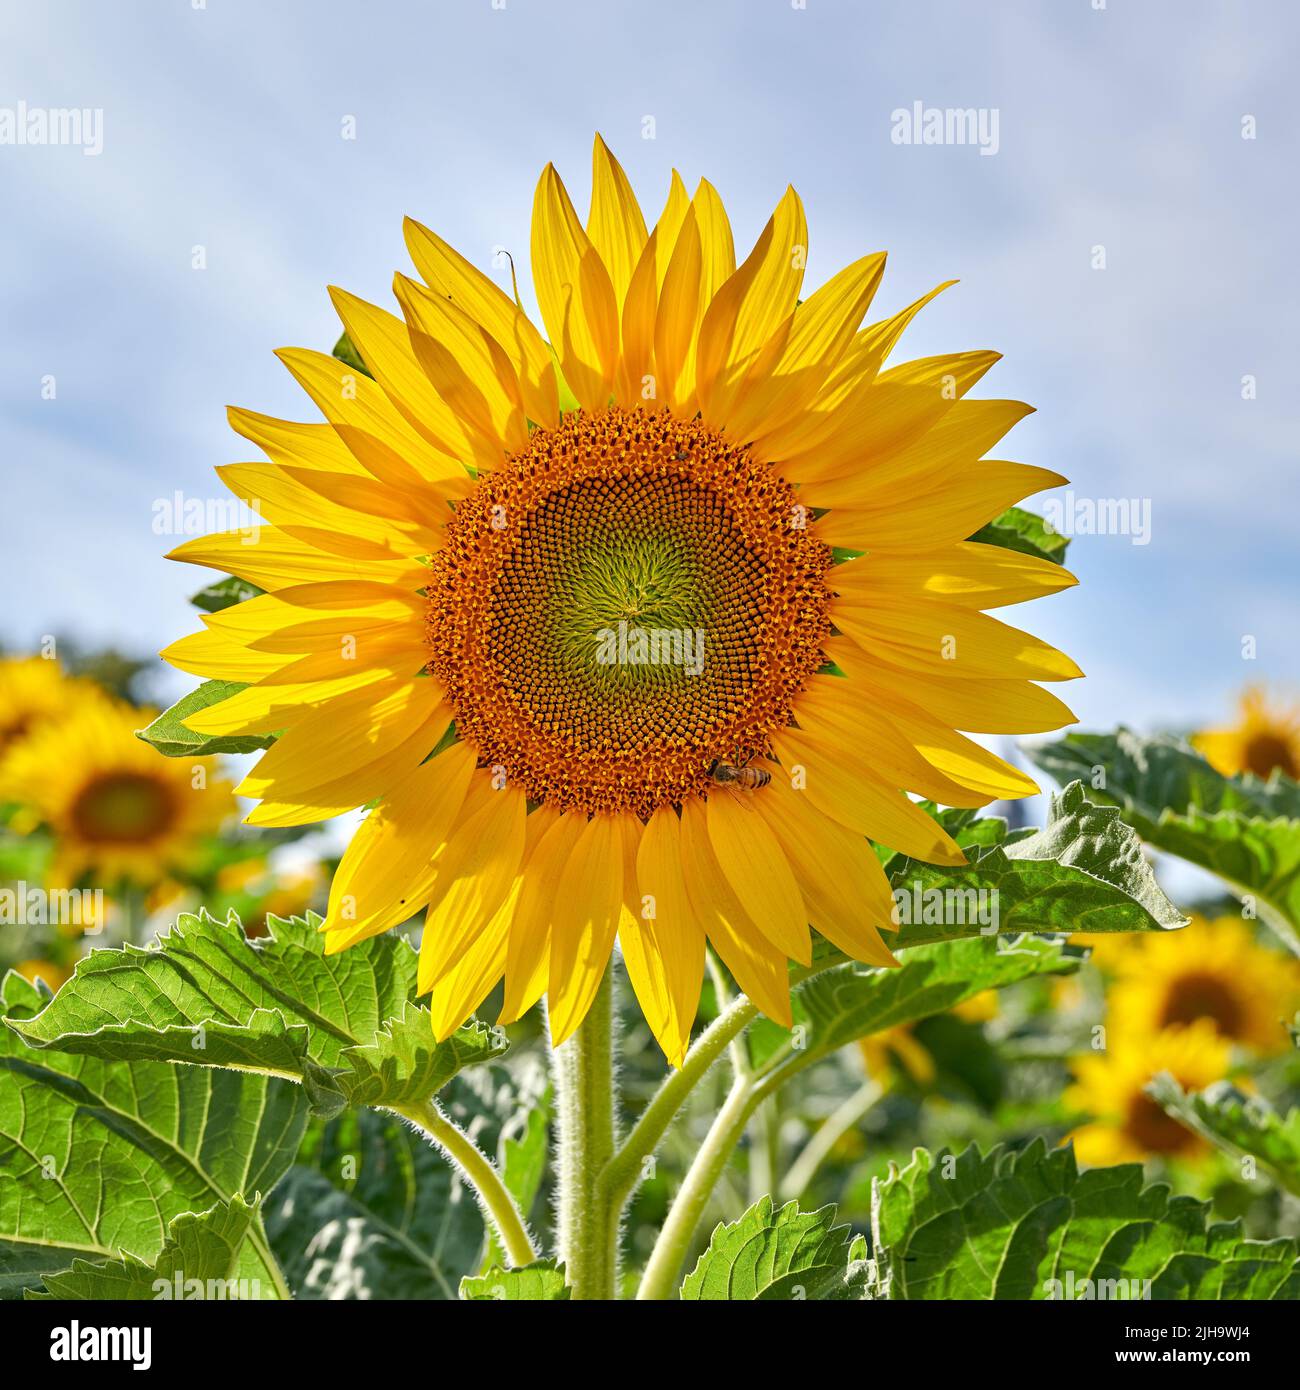 Eine Sonnenblume wächst auf einem Feld gegen einen wolkigen blauen Himmel mit Kopierfläche. Eine einzige gelbe blühende Pflanze, die im Frühjahr auf einem grünen Feld blüht Stockfoto